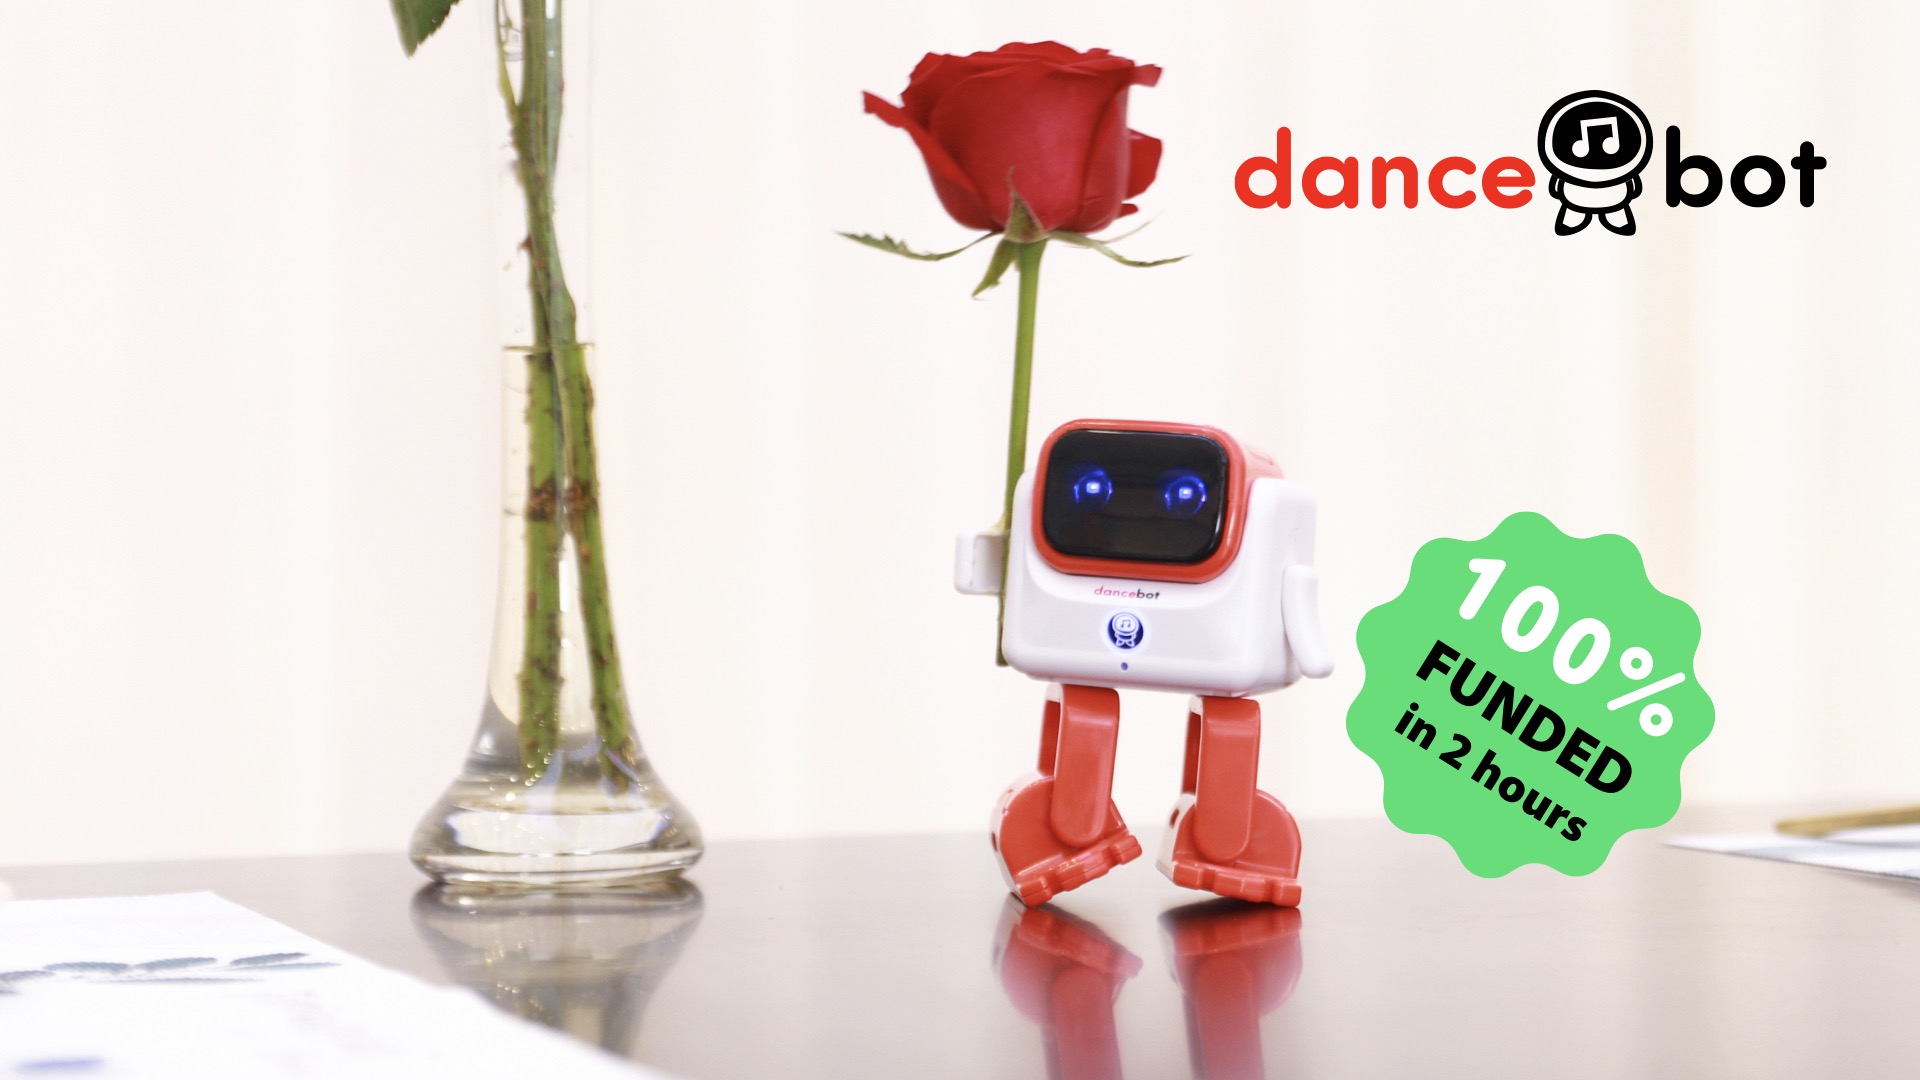 Dancebot, my first Kickstarter